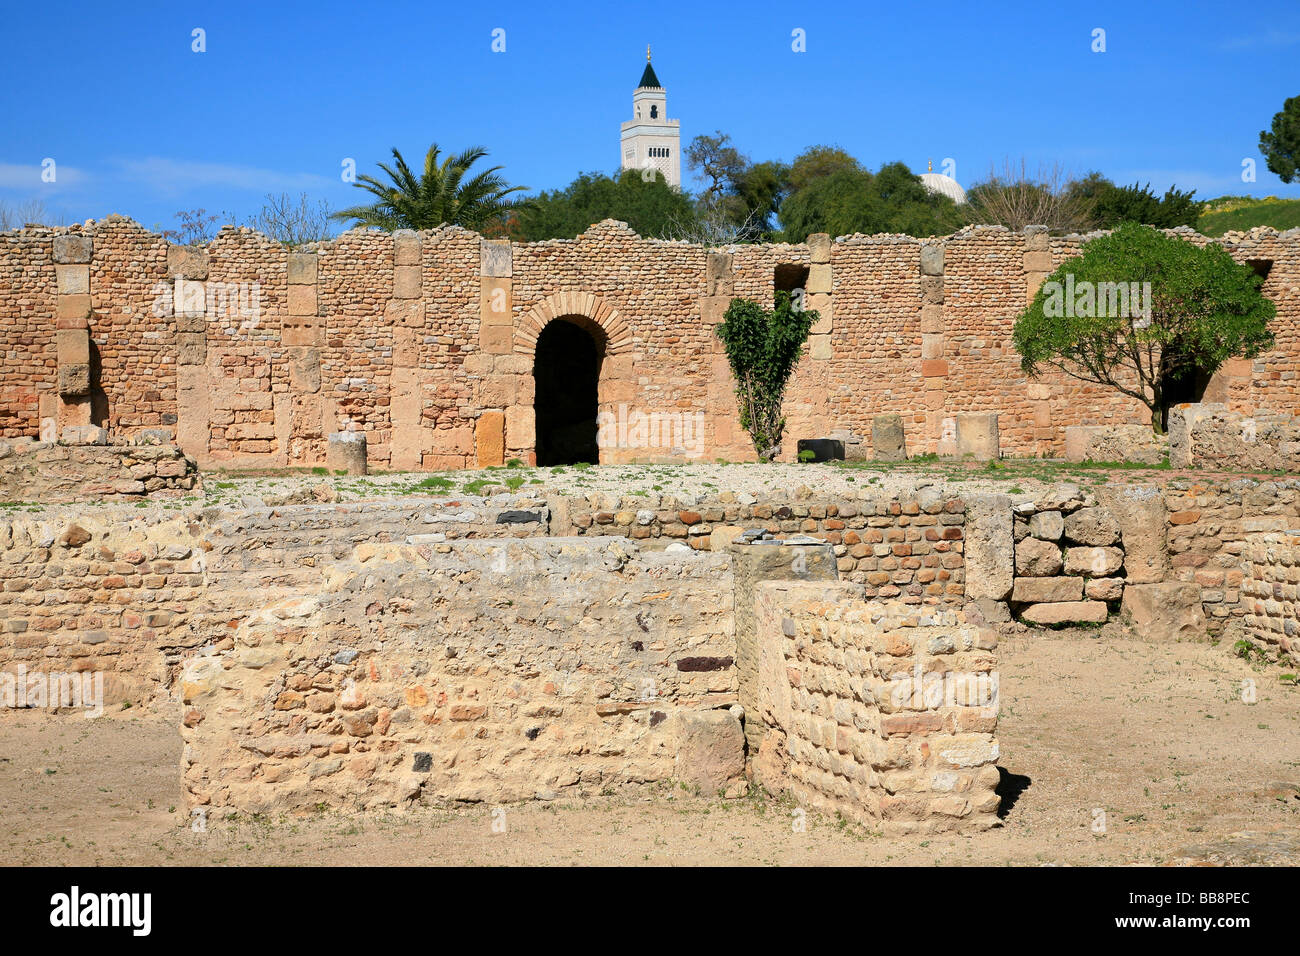 Ruinas de villas romanas en Cartago, Túnez Foto de stock